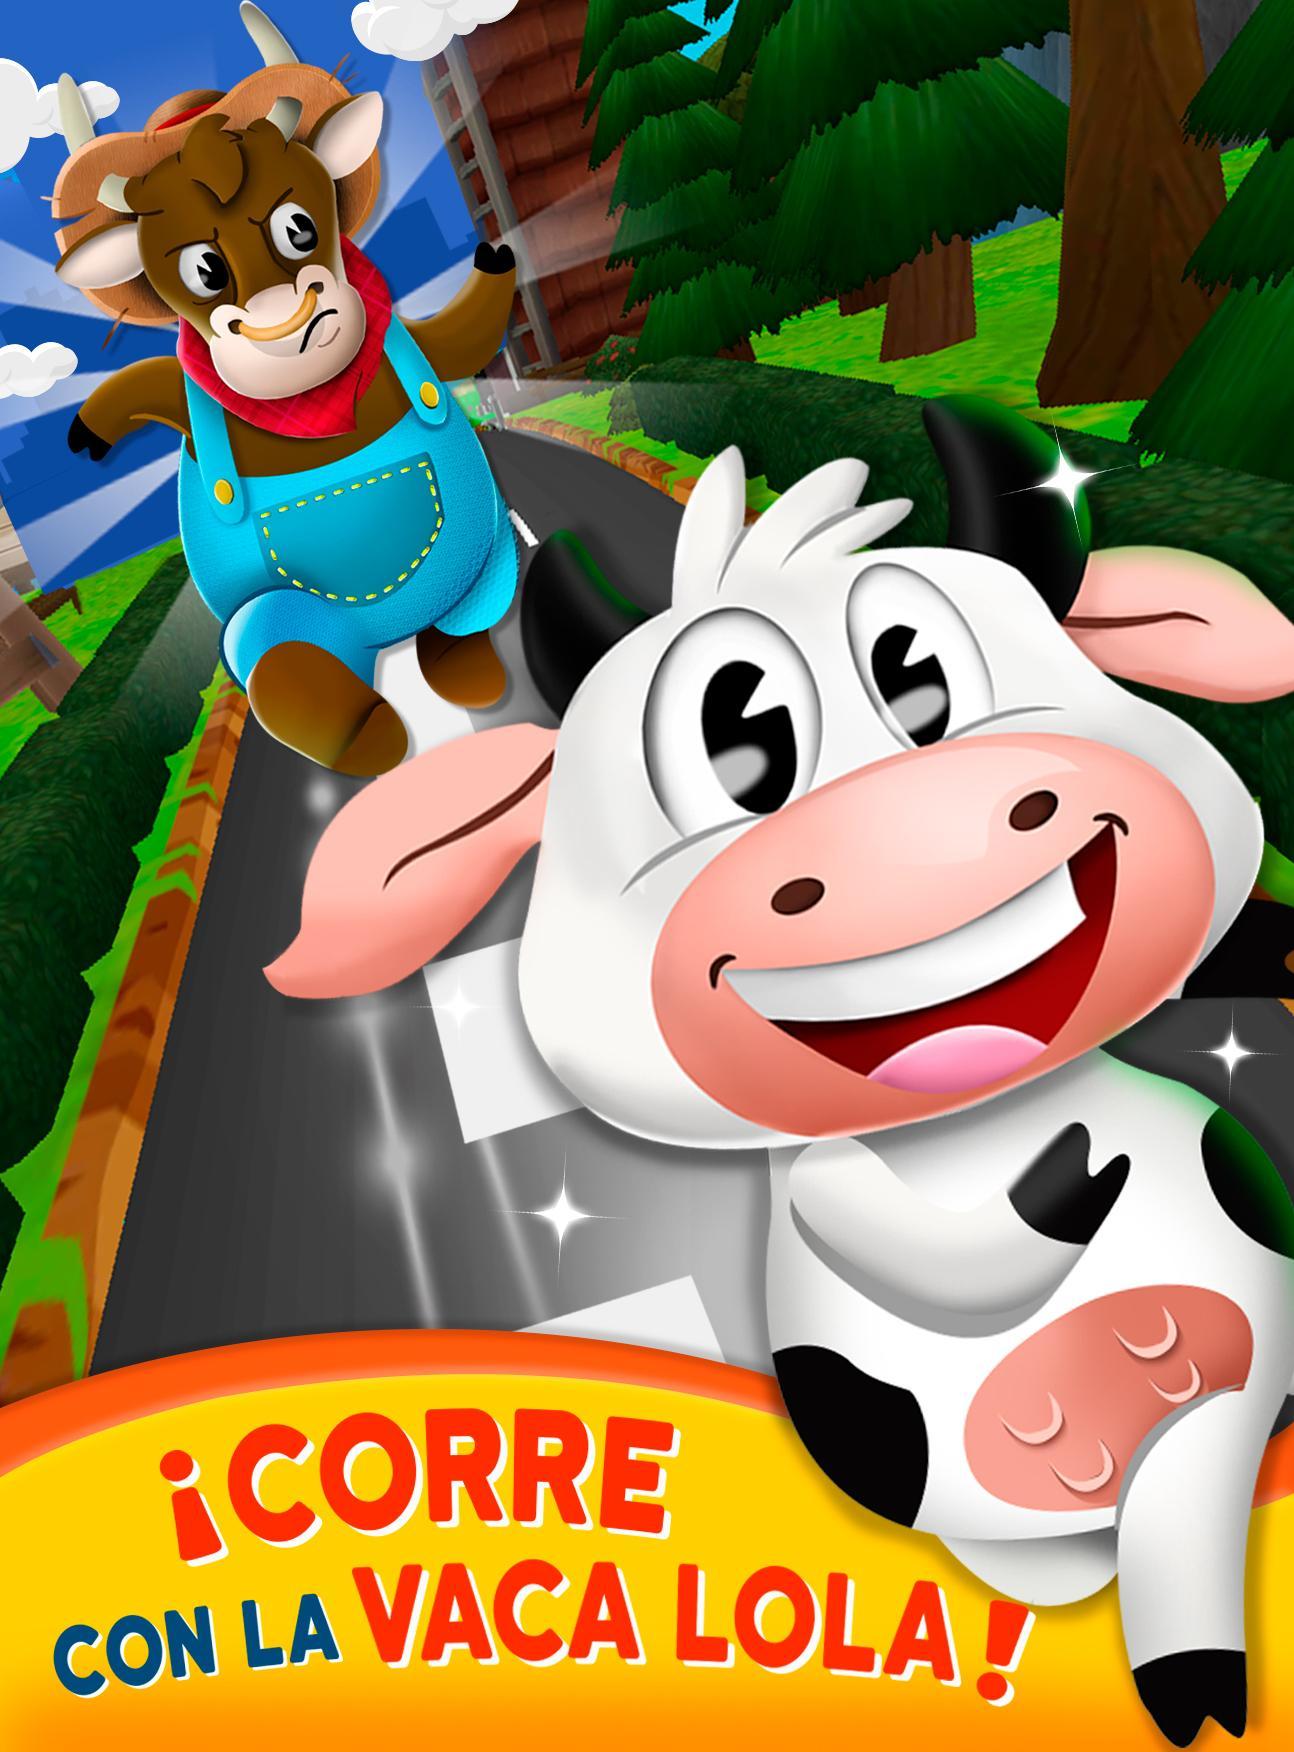 Vaca Lola: Corre Por La Granja! 🐮 for Android - APK Download